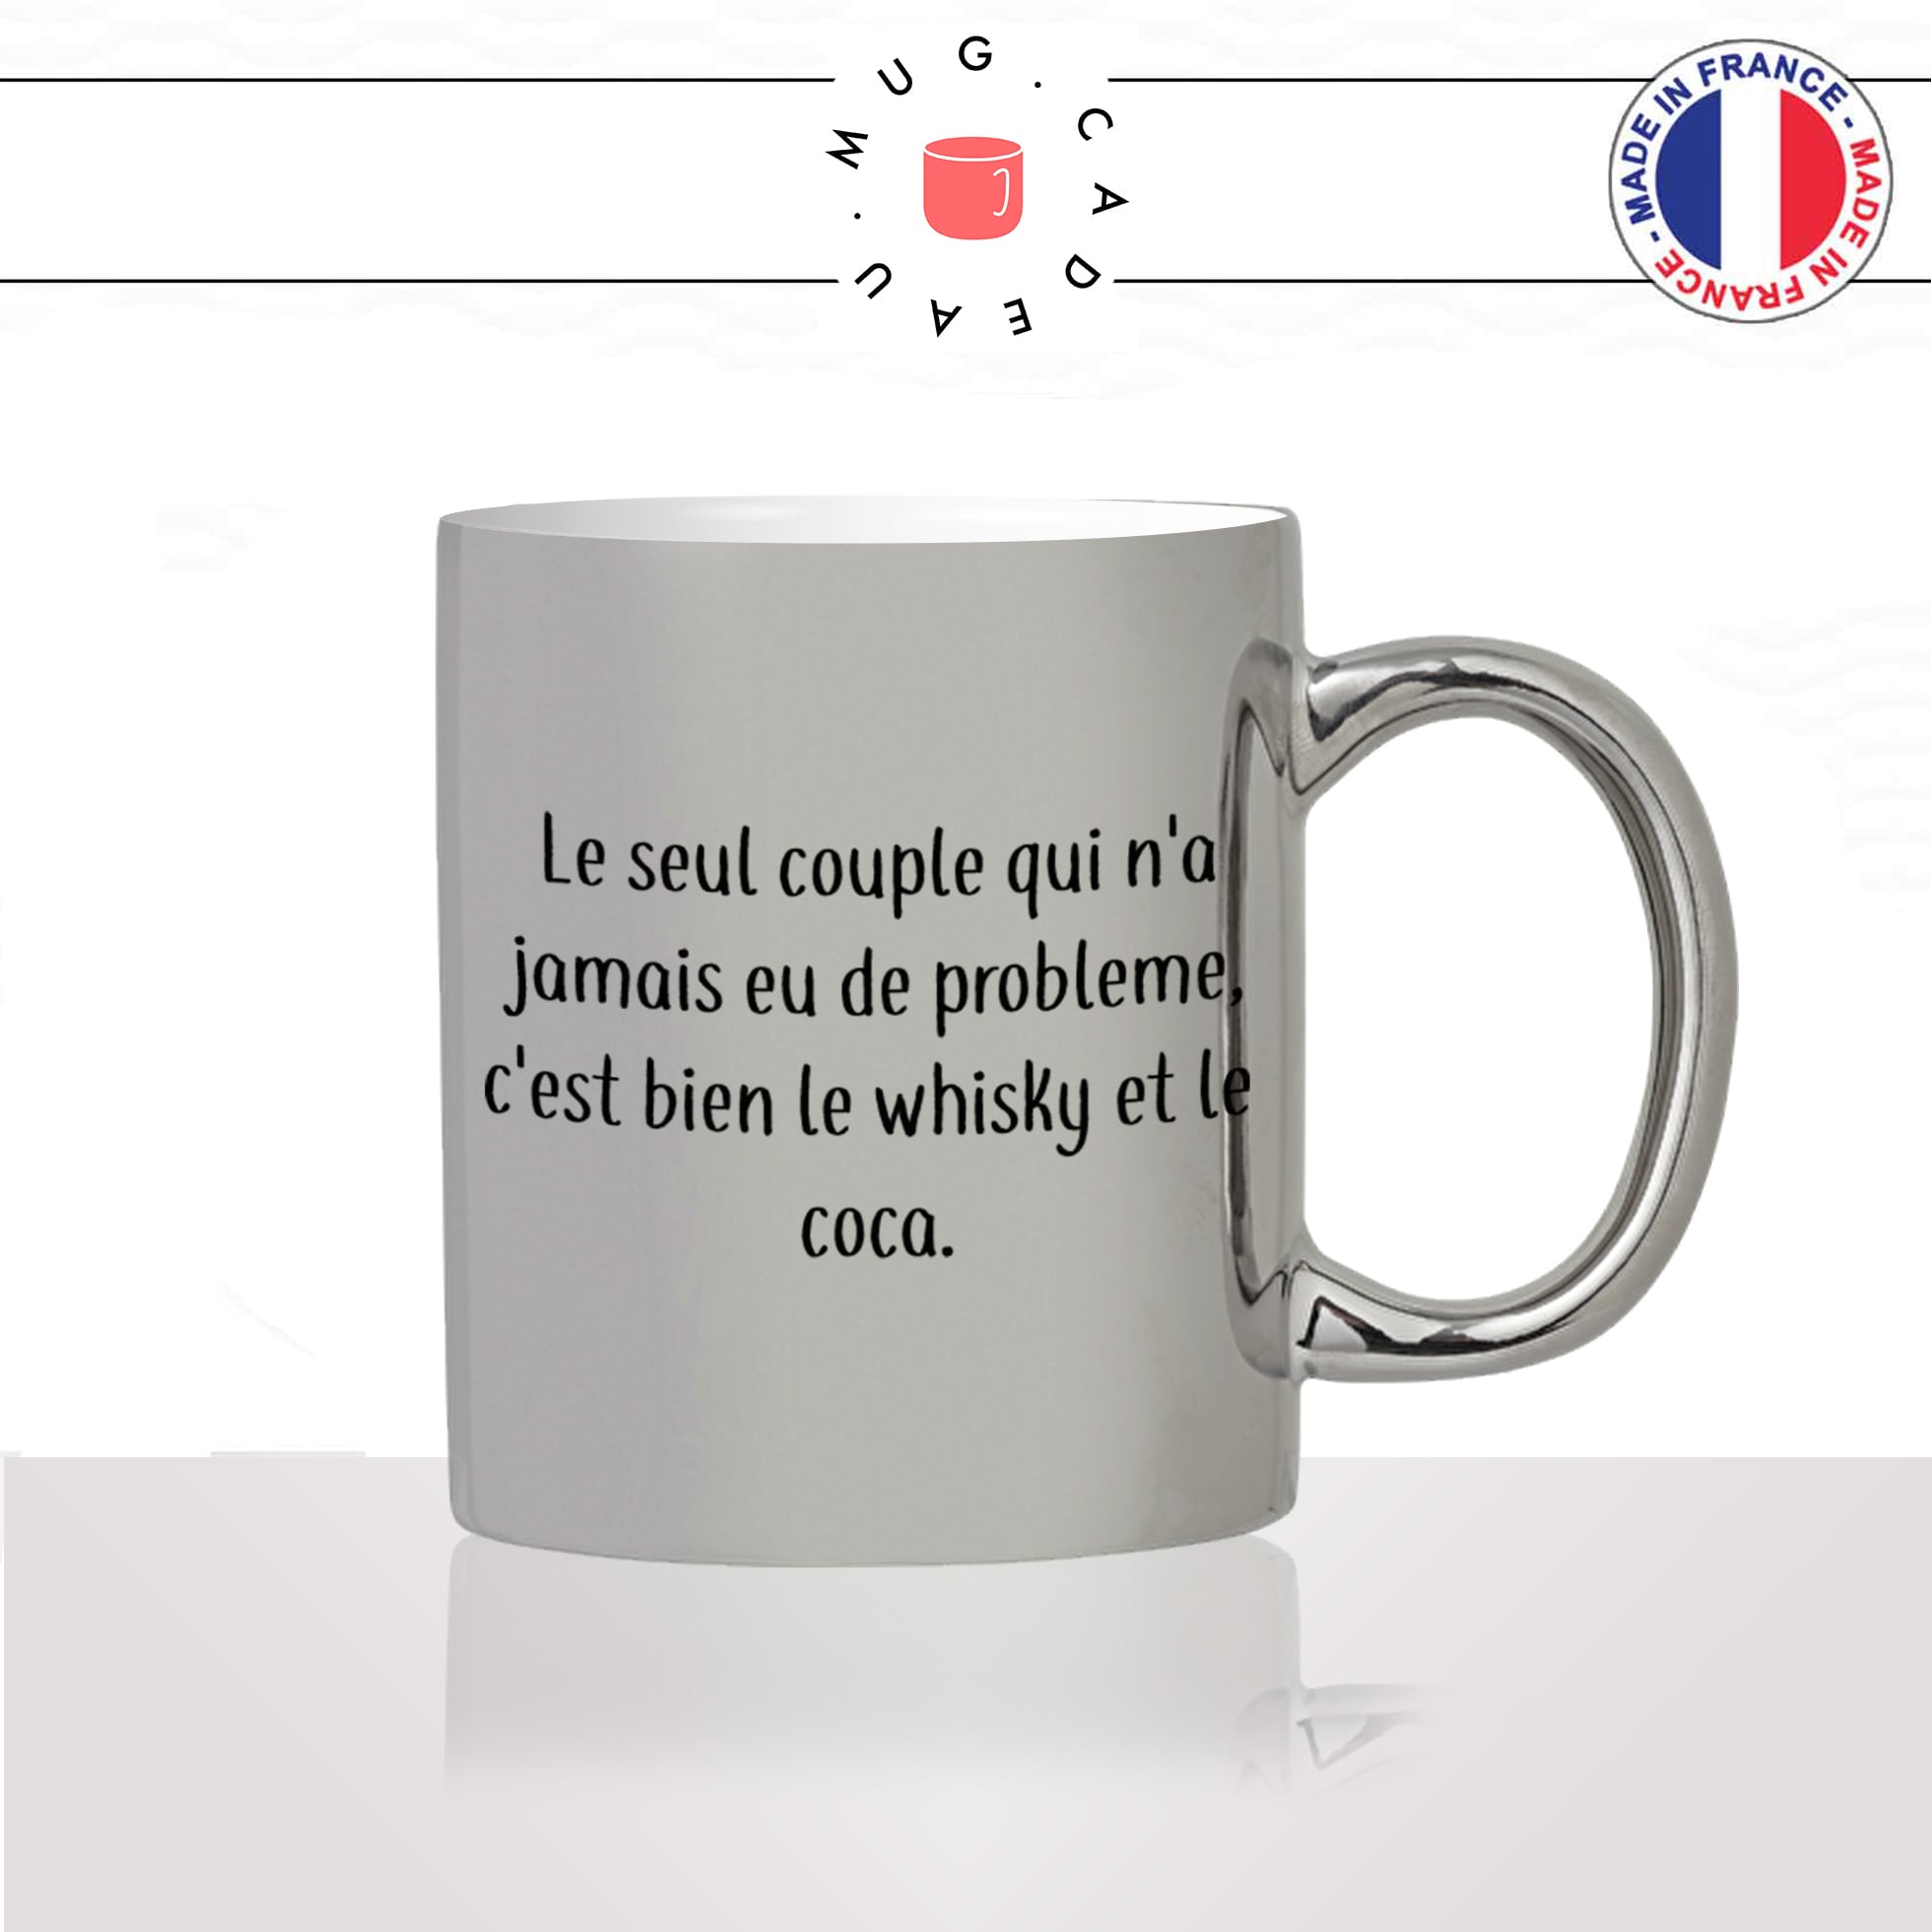 mug-tasse-silver-argenté-argent-whisky-coca-jack-daniels-drole-humour-couple-amour-celibataire-idée-cadeau-original-personnalisé-café-thé2-min